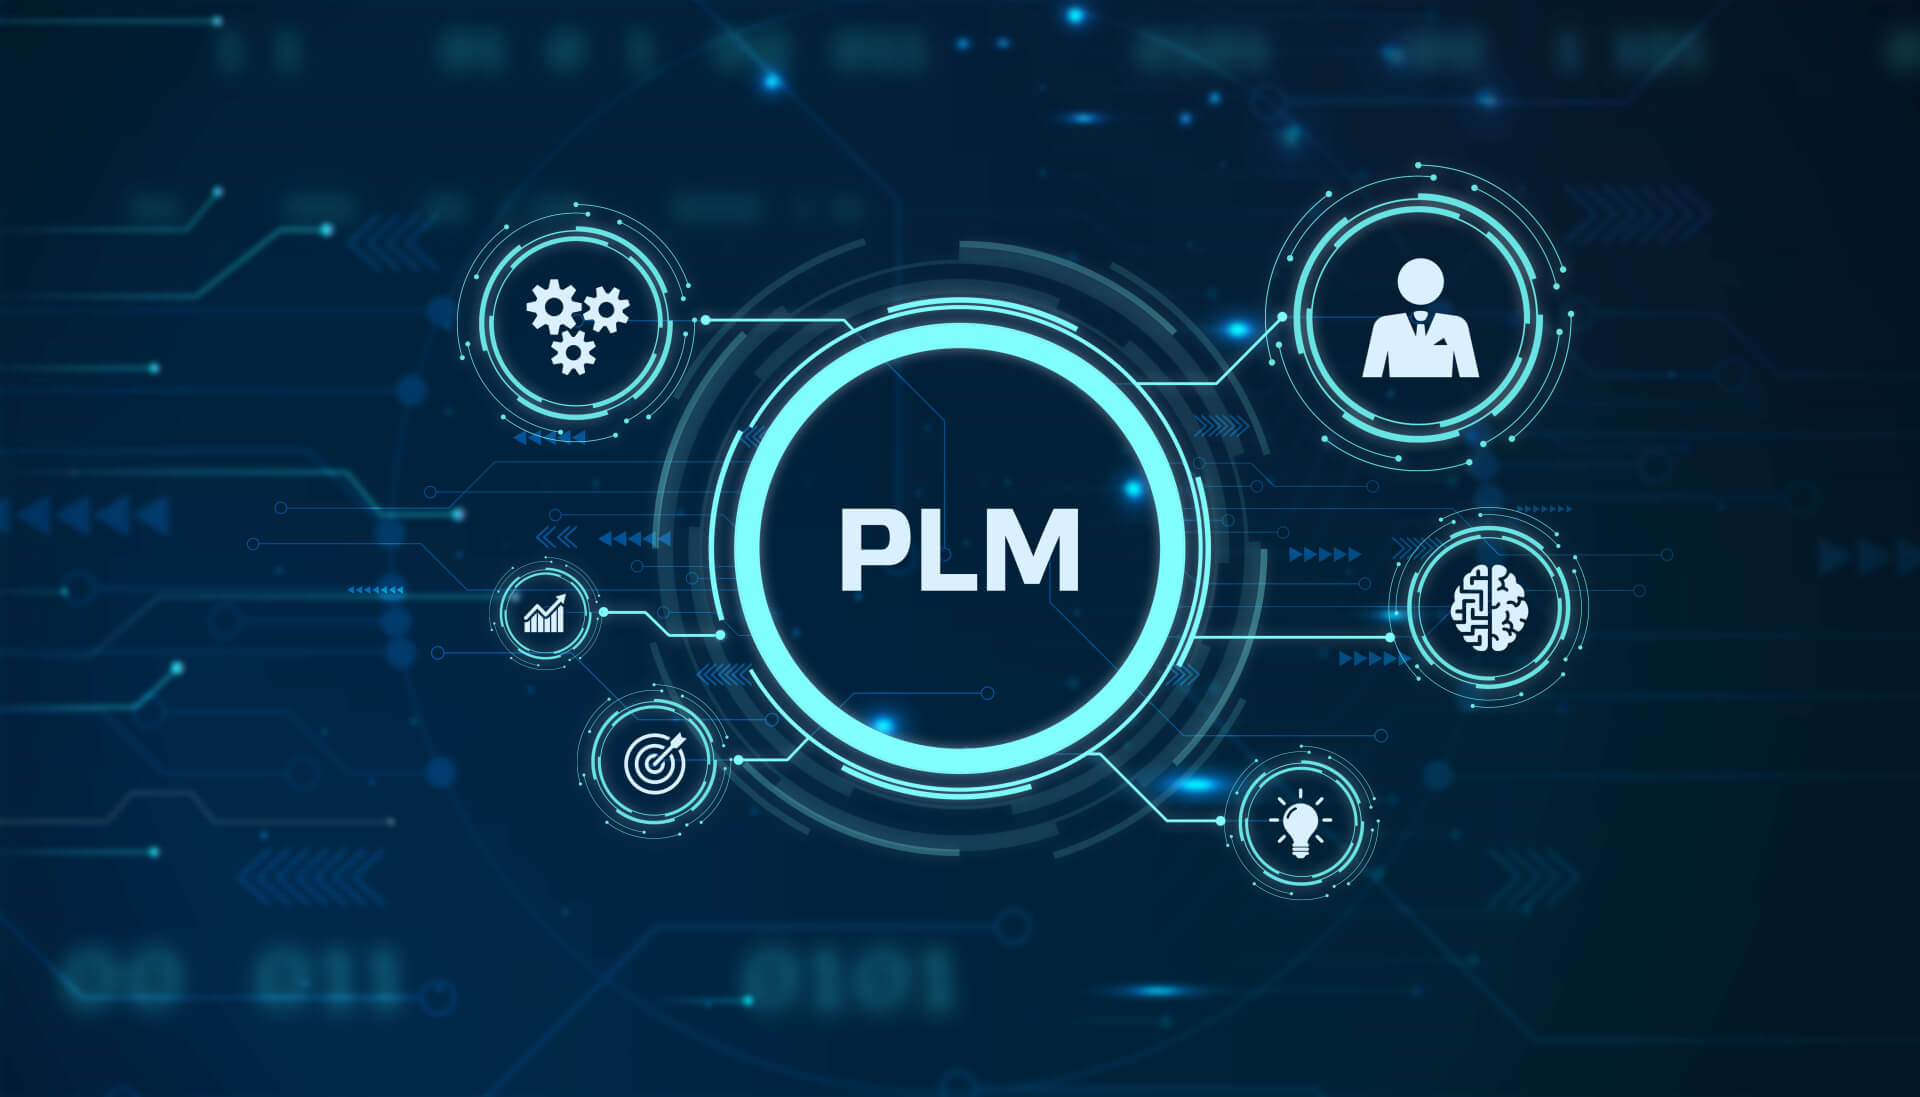 keytech PDM PLM